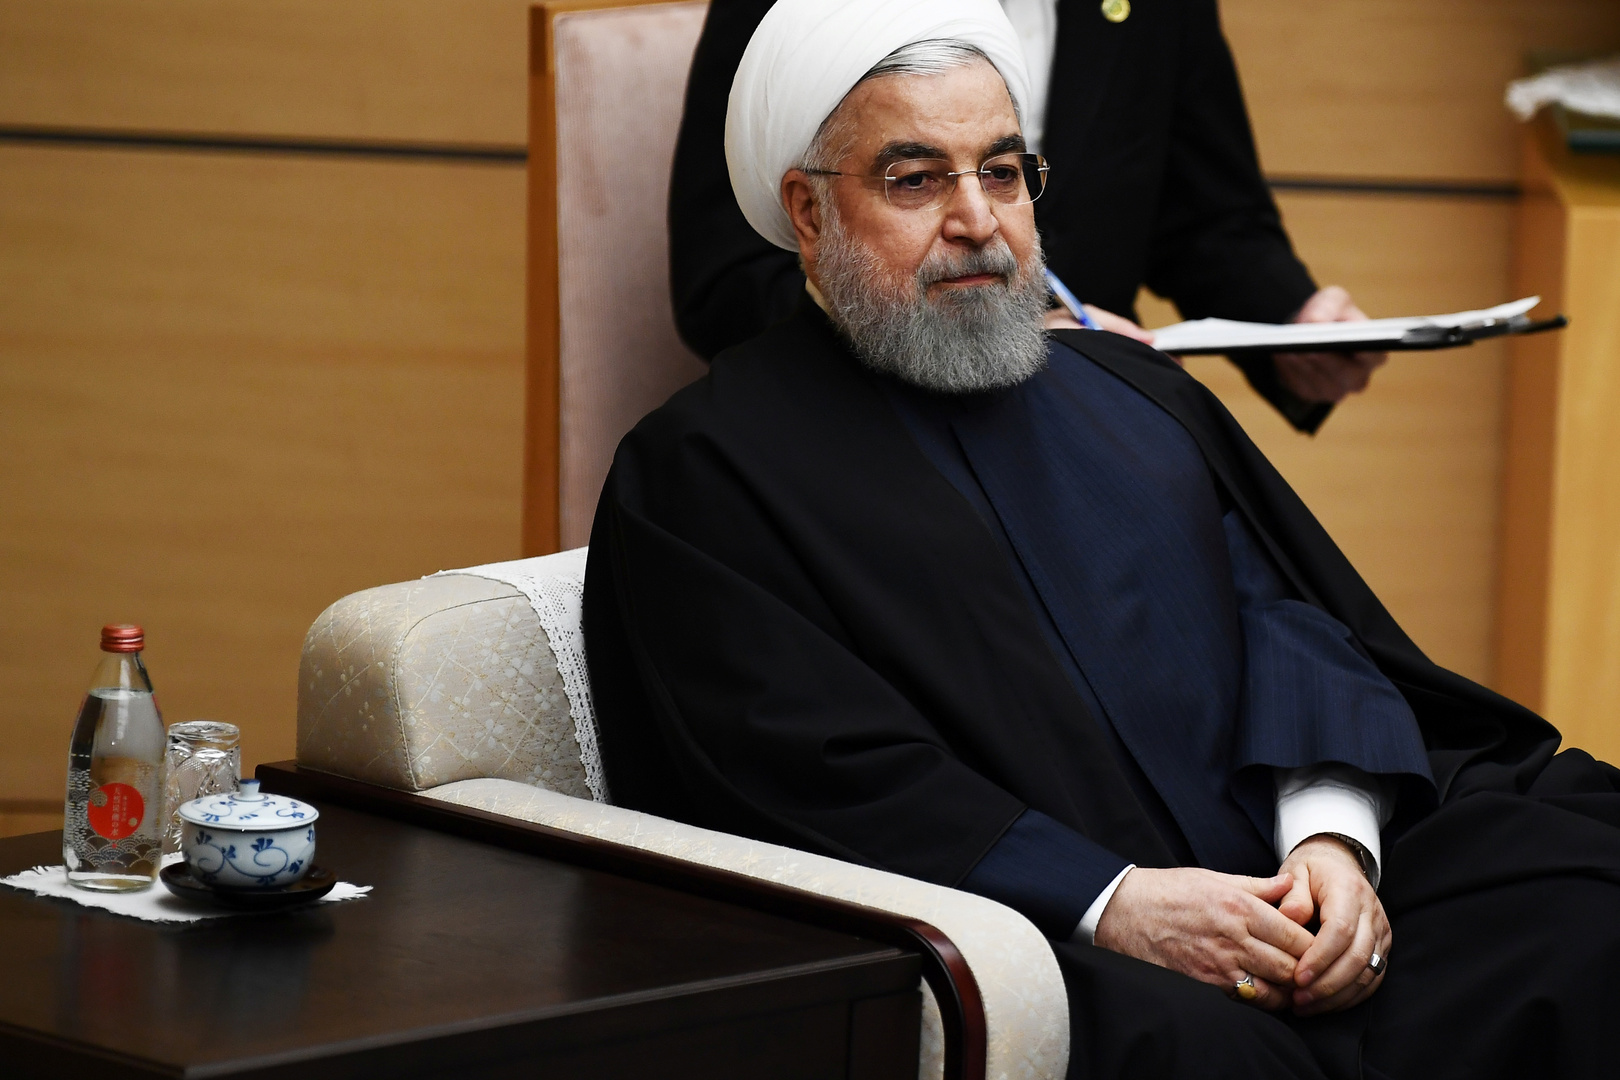 روحاني يقدم اعتذاره للشعب الإيراني